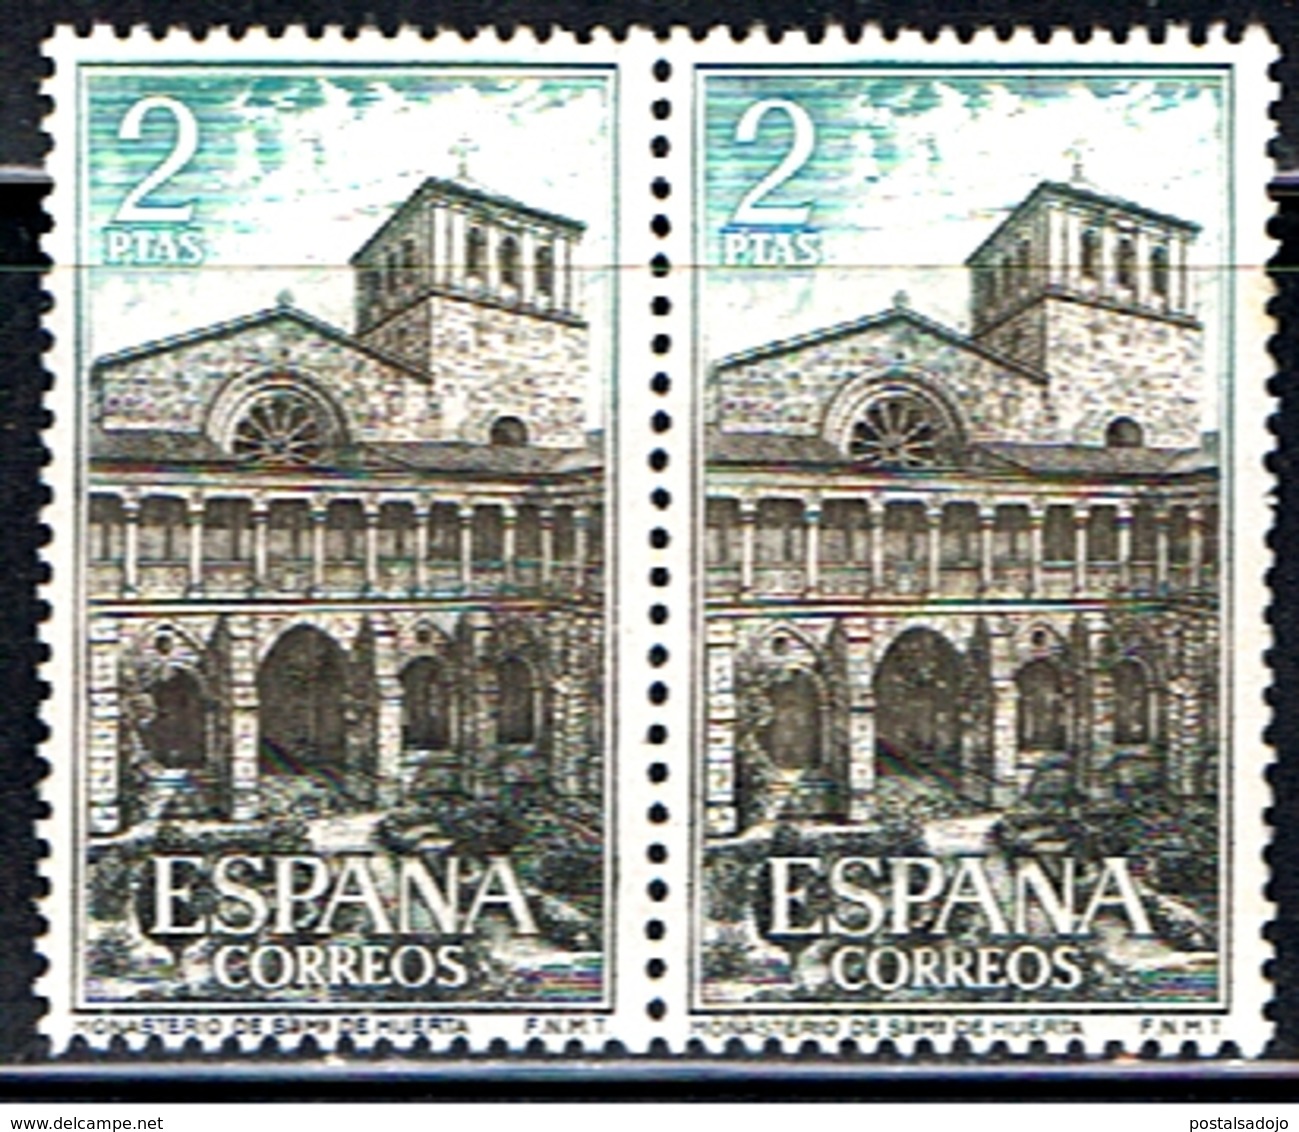 (5E 559) ESPAÑA // YVERT 1216 // EDIFIL 1564 & 1564 // 1964 - Neufs